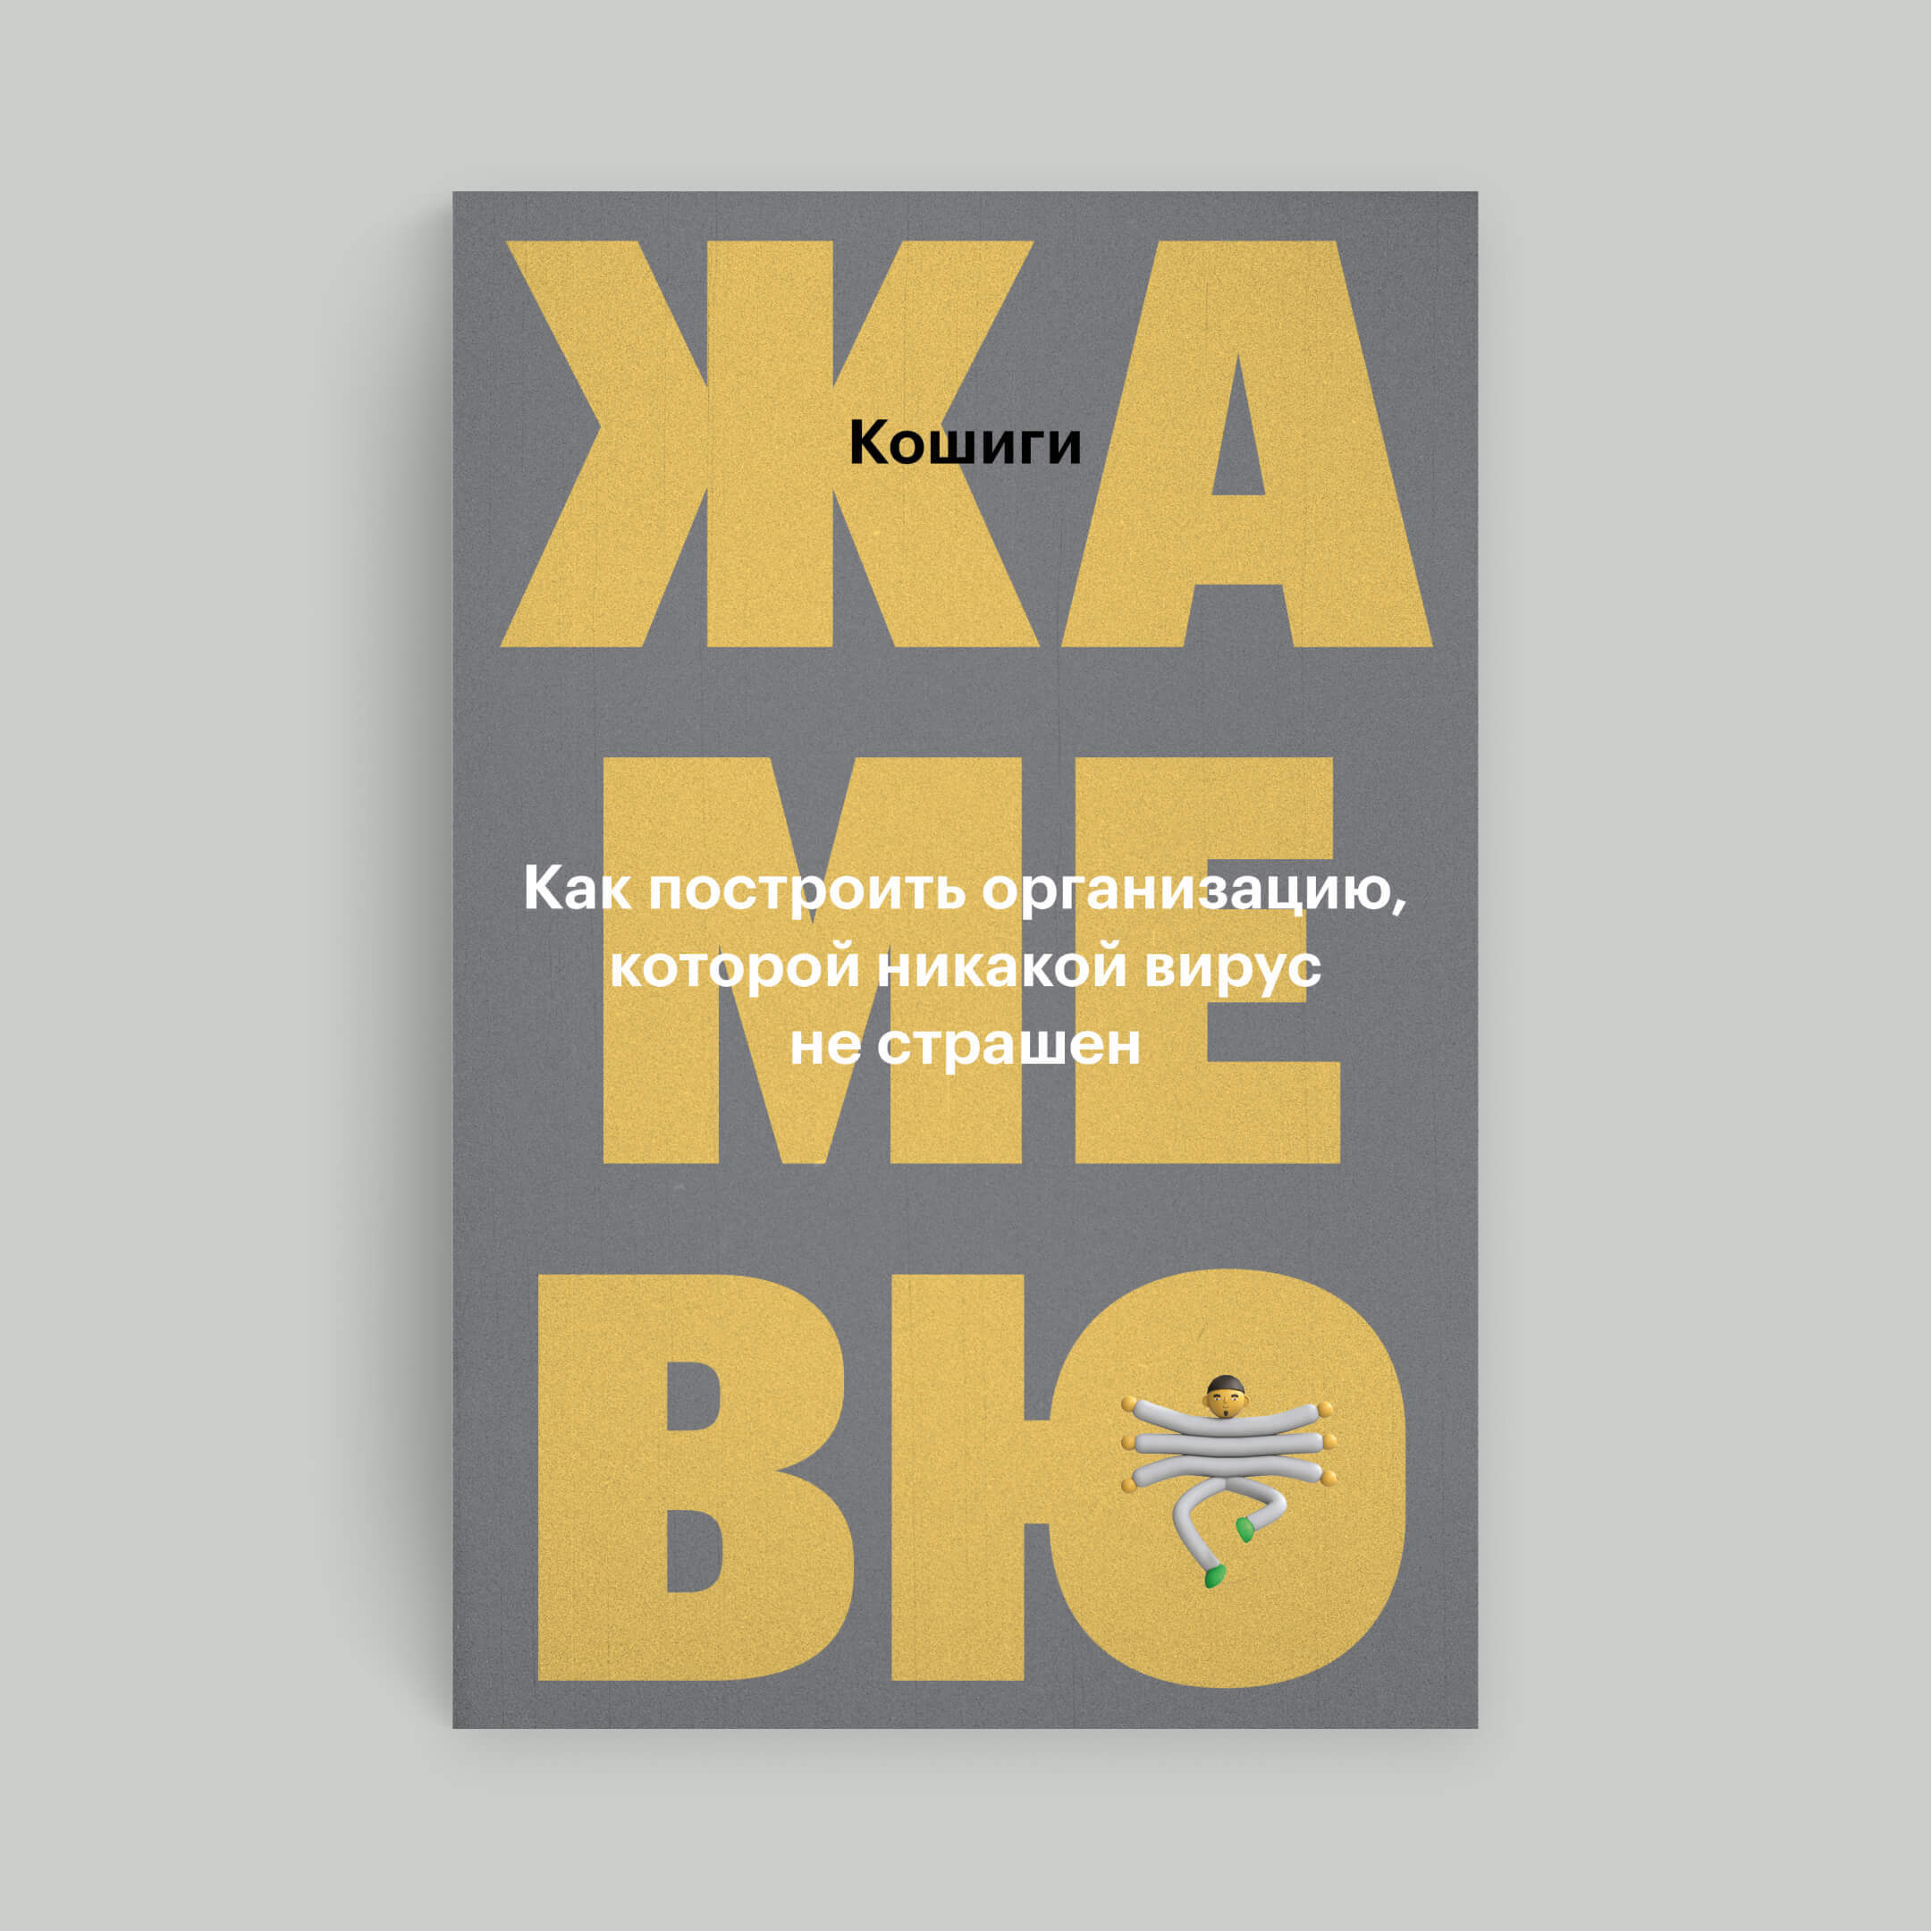 Обложка книги Дмитрия Костыгина «Жамевю. Как построить организацию, которой никакой вирус не страшен»